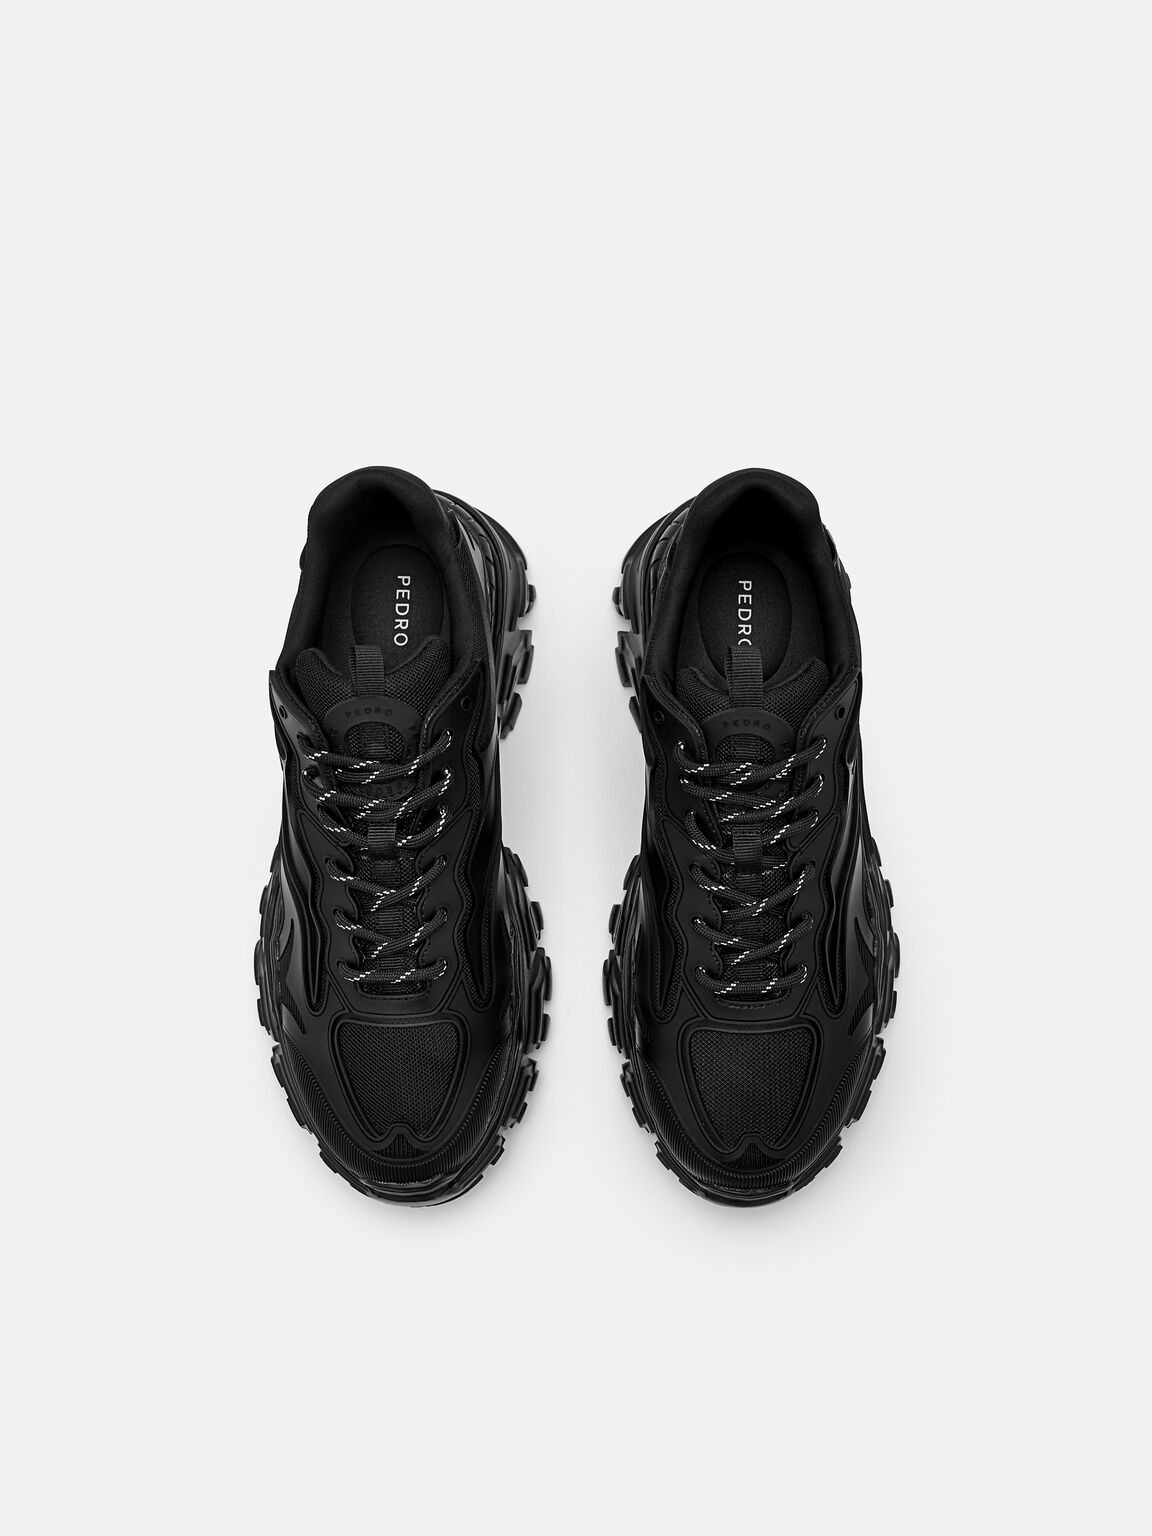 Summit Sneakers, Black